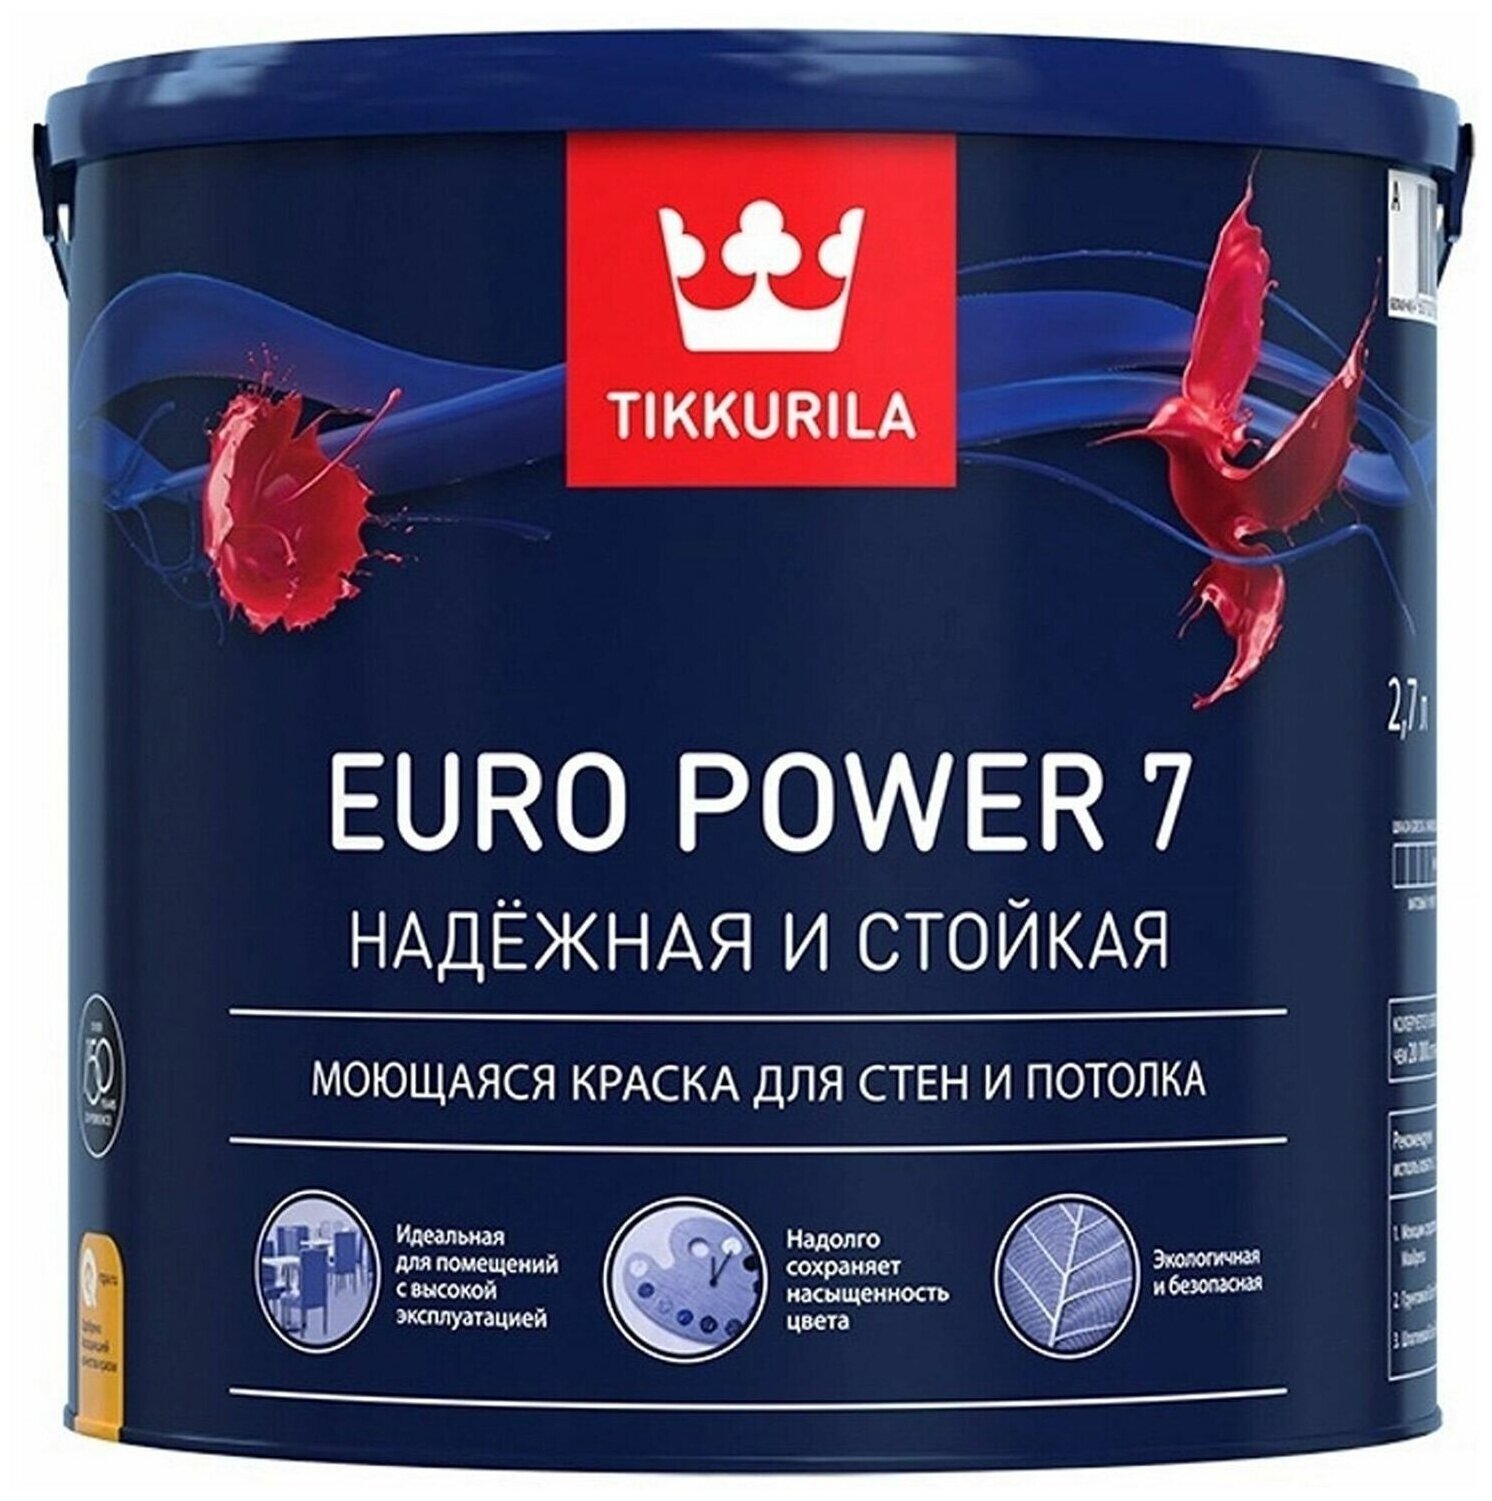 Tikkurila Euro Power 7 моющаяся краска для стен и потолков (белый, матовый, база A, 2,7 л)